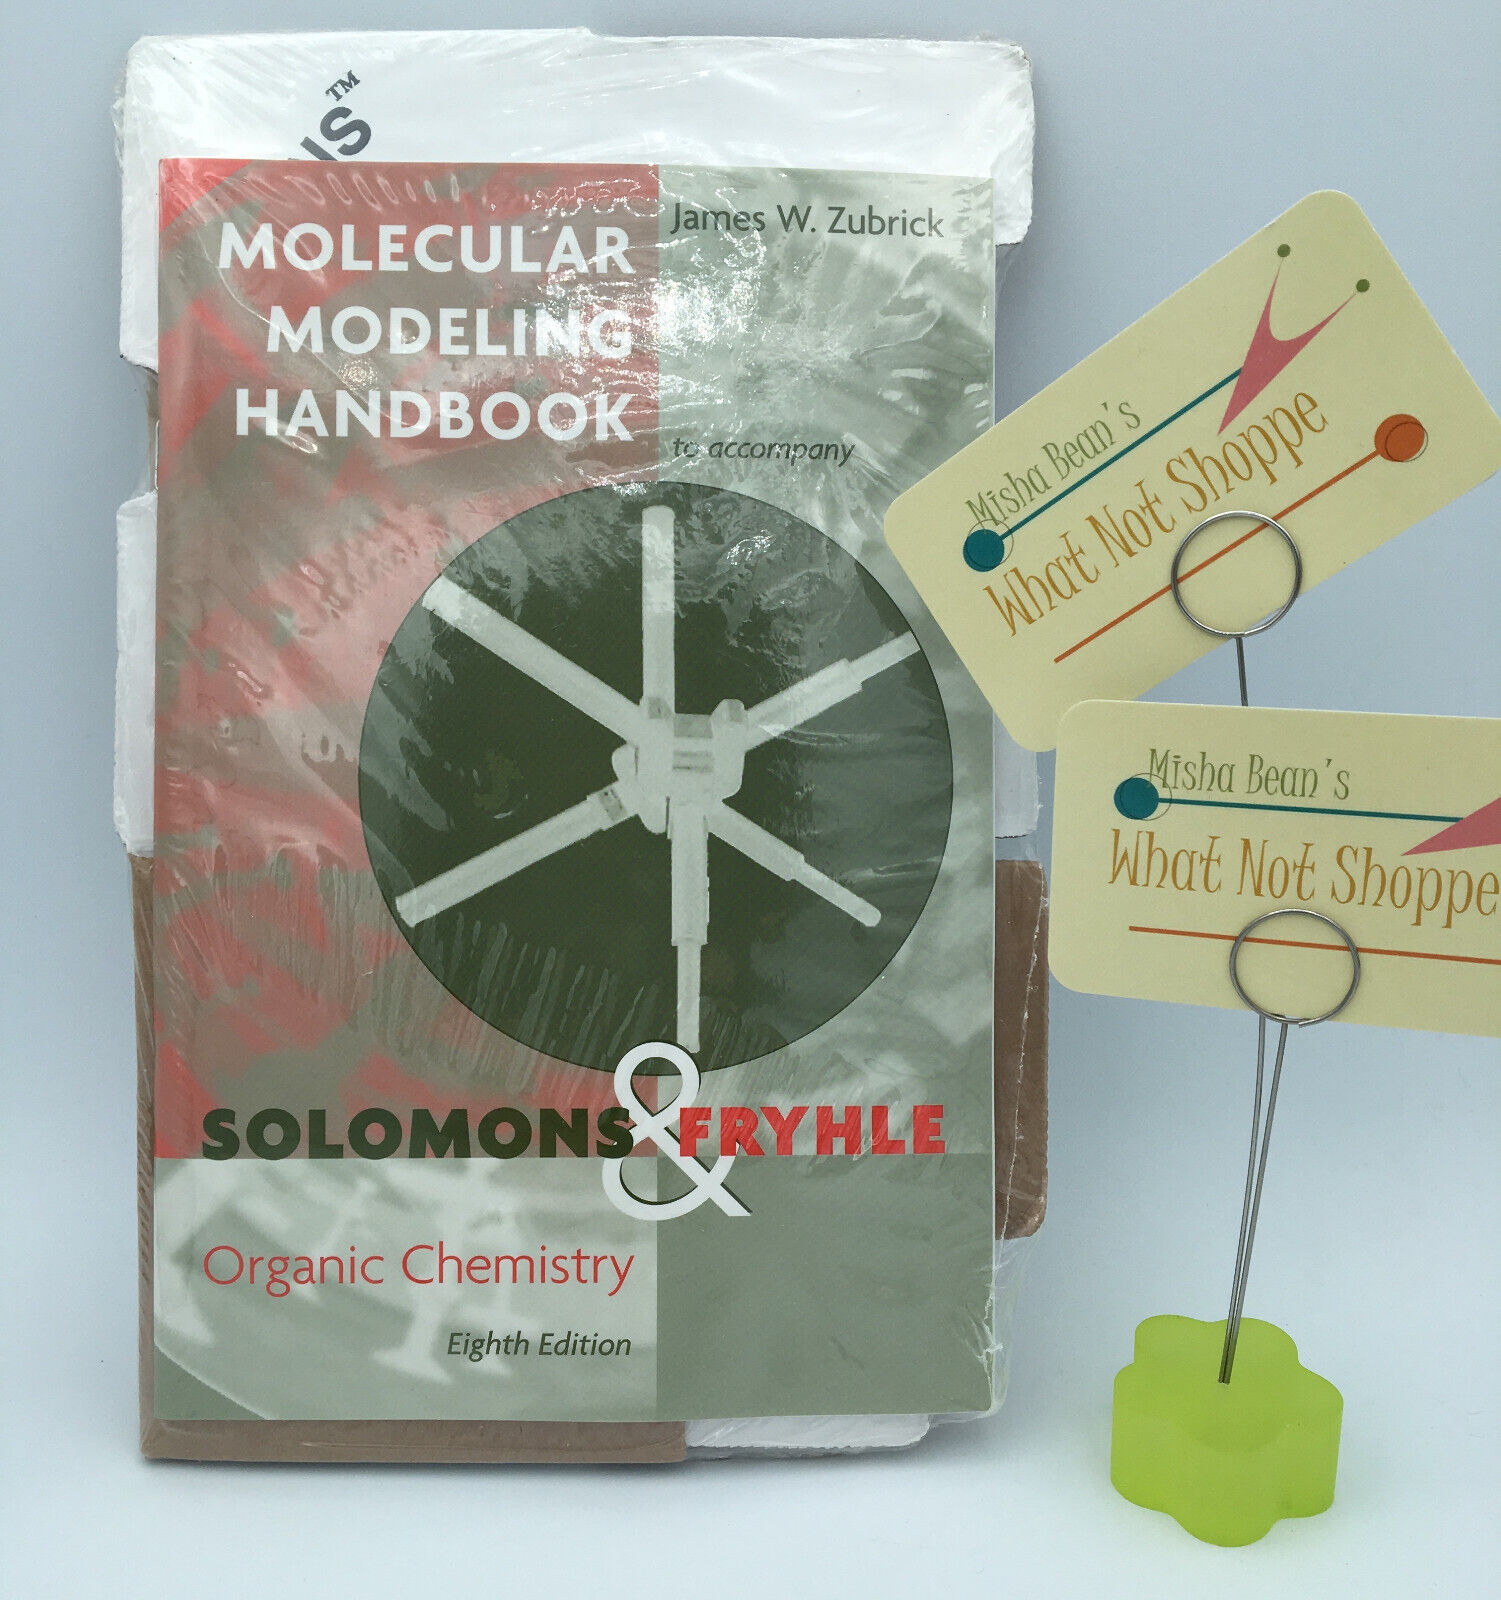 NEW Molecular Vision Organic Chemistry Handbook & Model Kit 1999 Darling Models